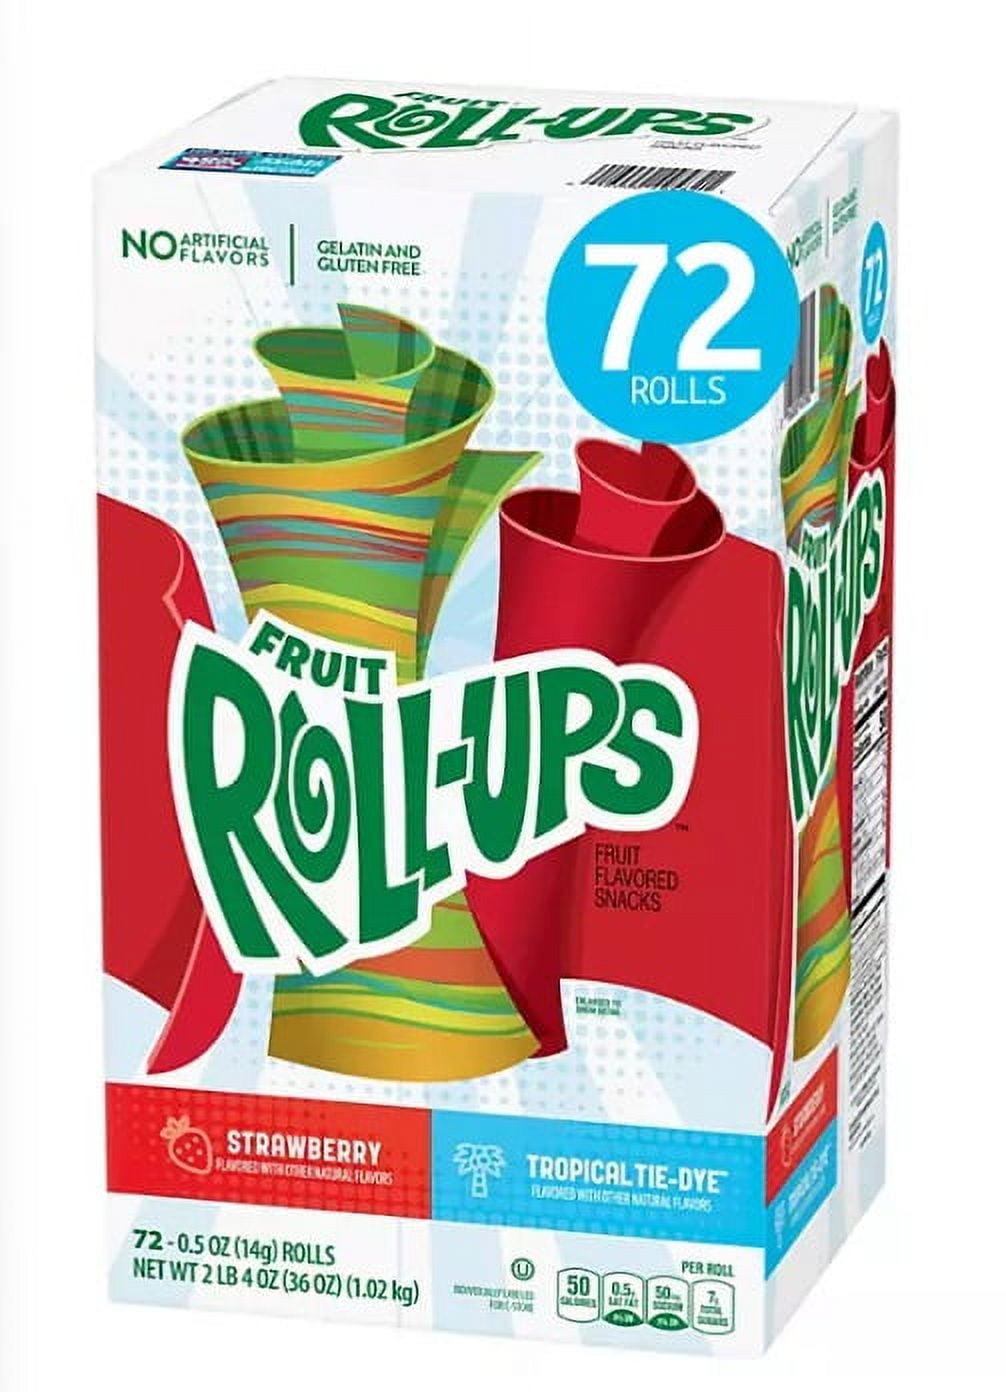 Fruit Roll-Ups Fruit Snacks Variety Pack (0.5 oz., 72 pk